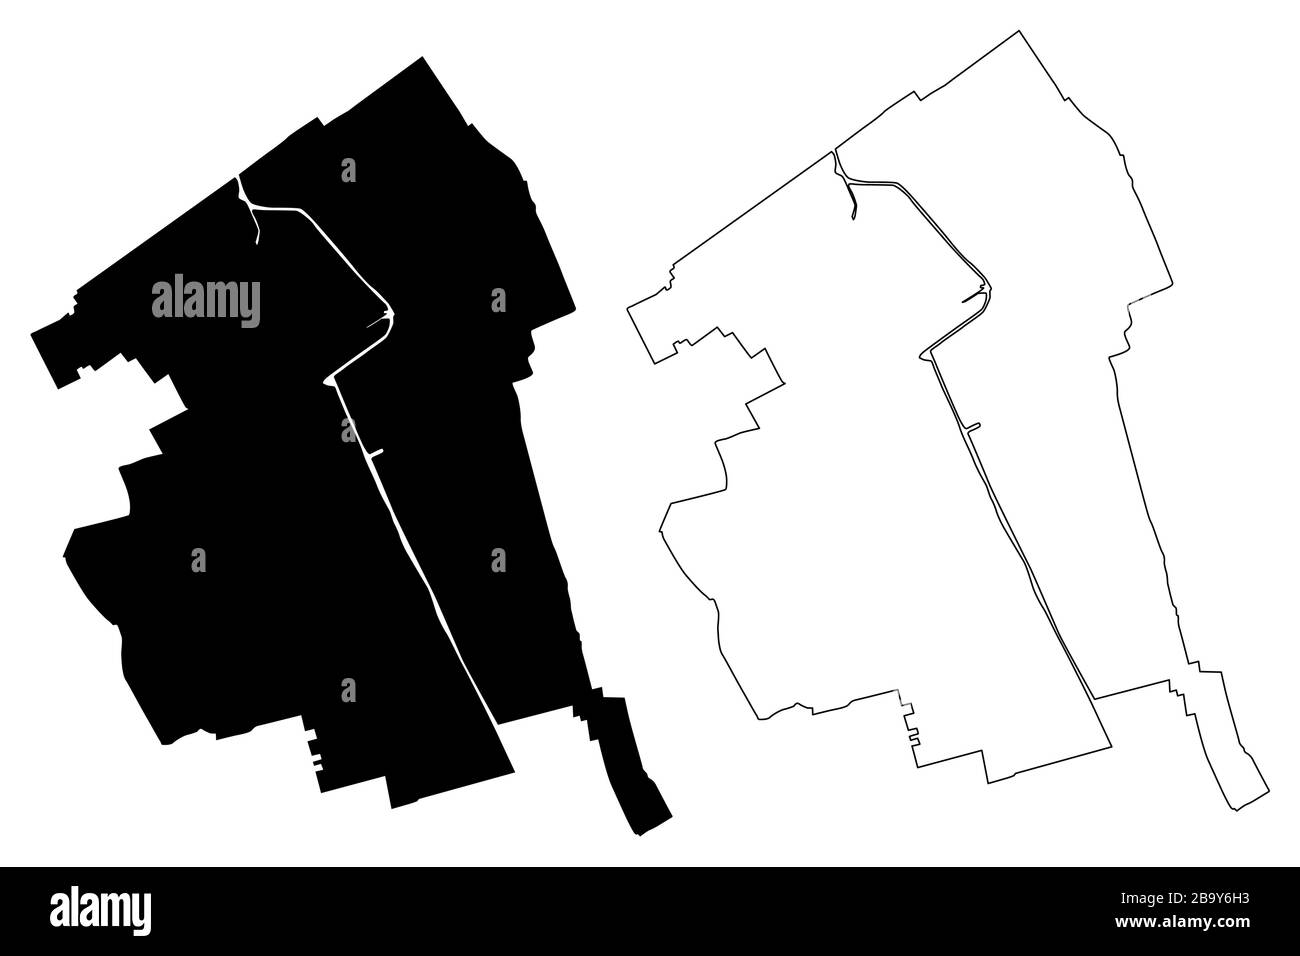 Delft City (Königreich der Niederlande, Südholland) Karte Vektor-Illustration, Scribble Sketch City of Delft Karte Stock Vektor